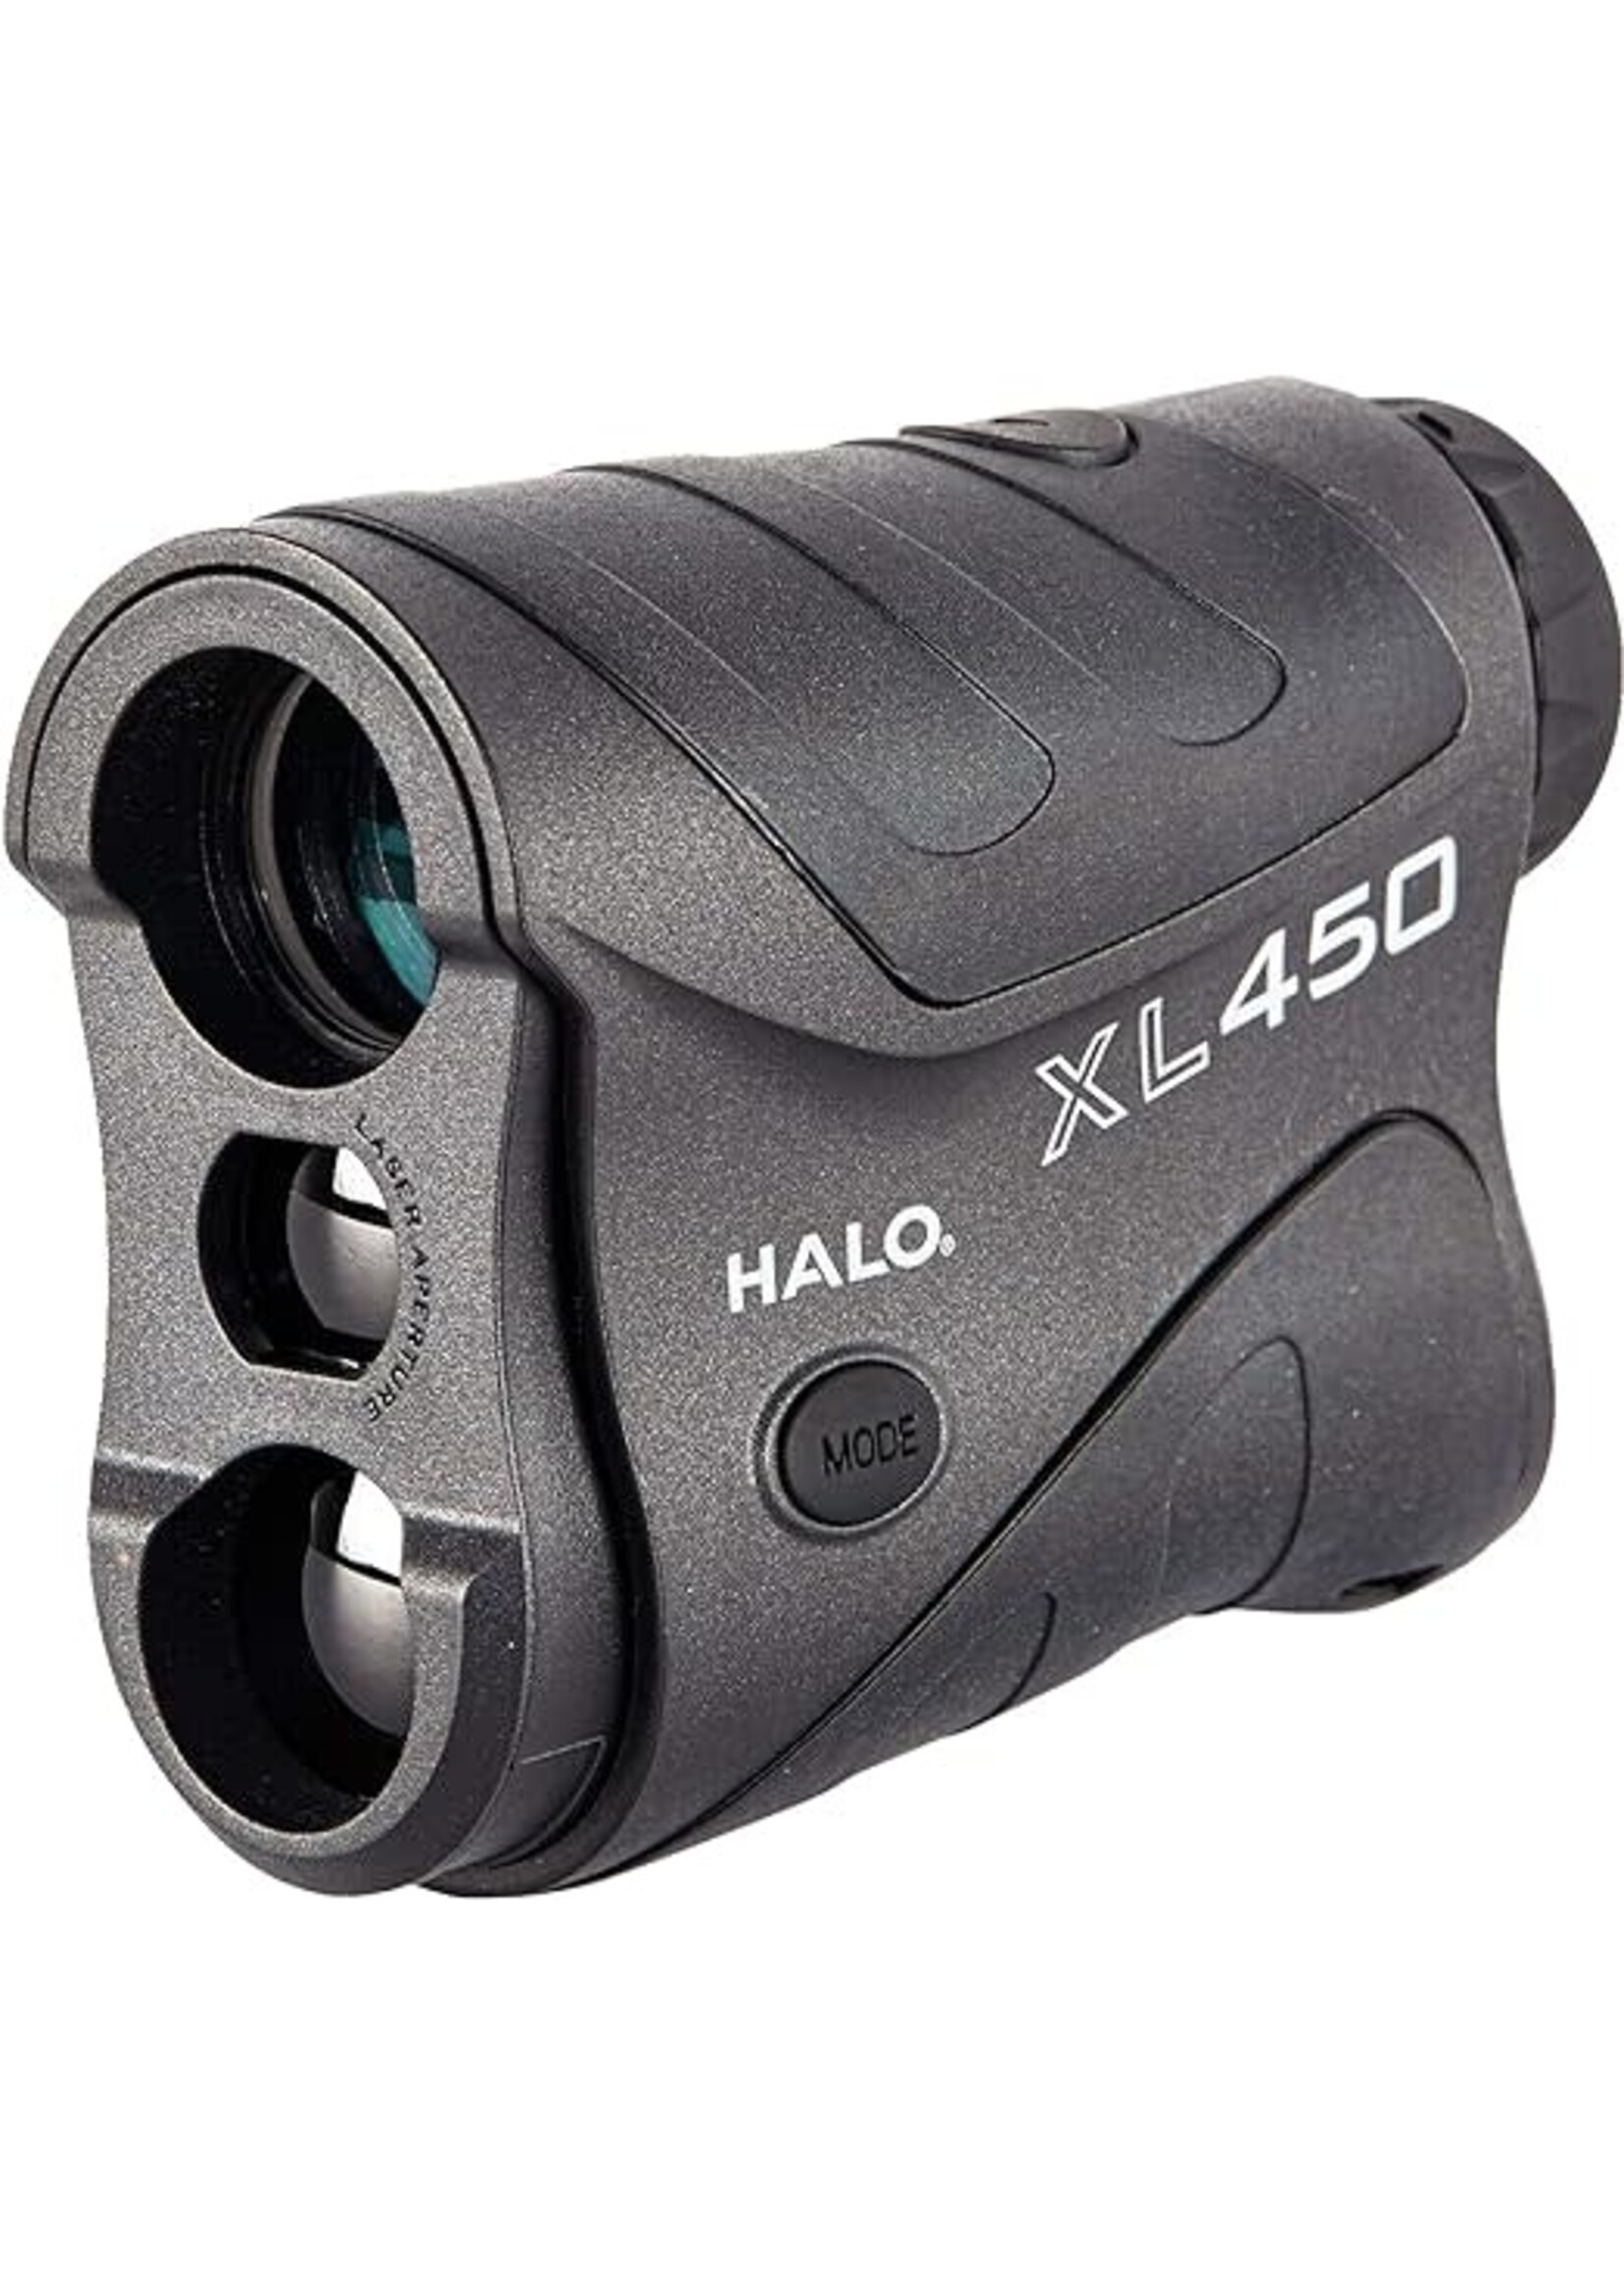 halo optics xl450 laser rangefinder